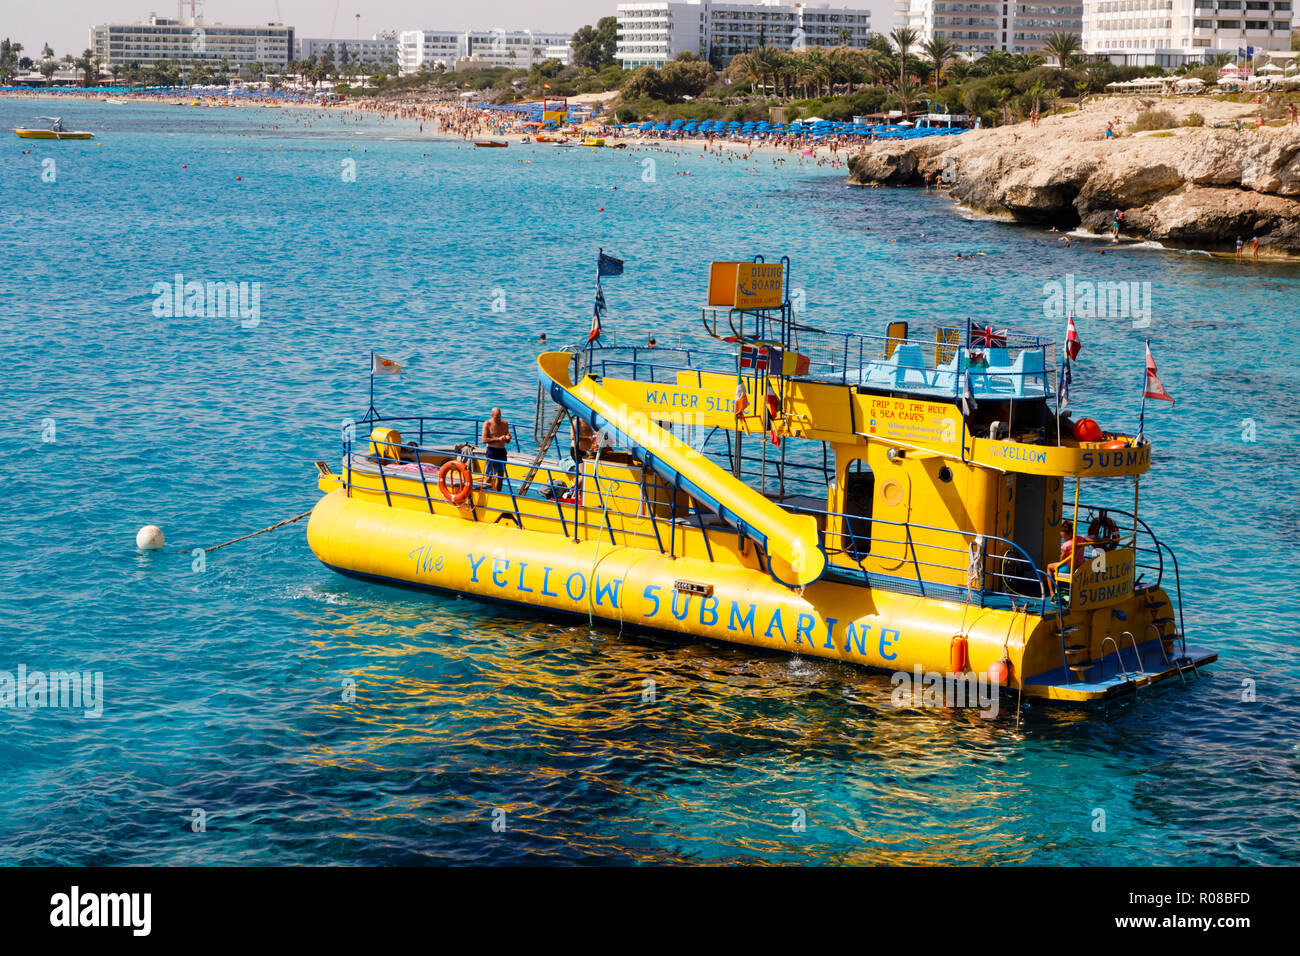 Sottomarino Giallo imbarcazione da diporto presso il ponte di amore, Ayia Napa, Cipro Ottobre 2018 Foto Stock